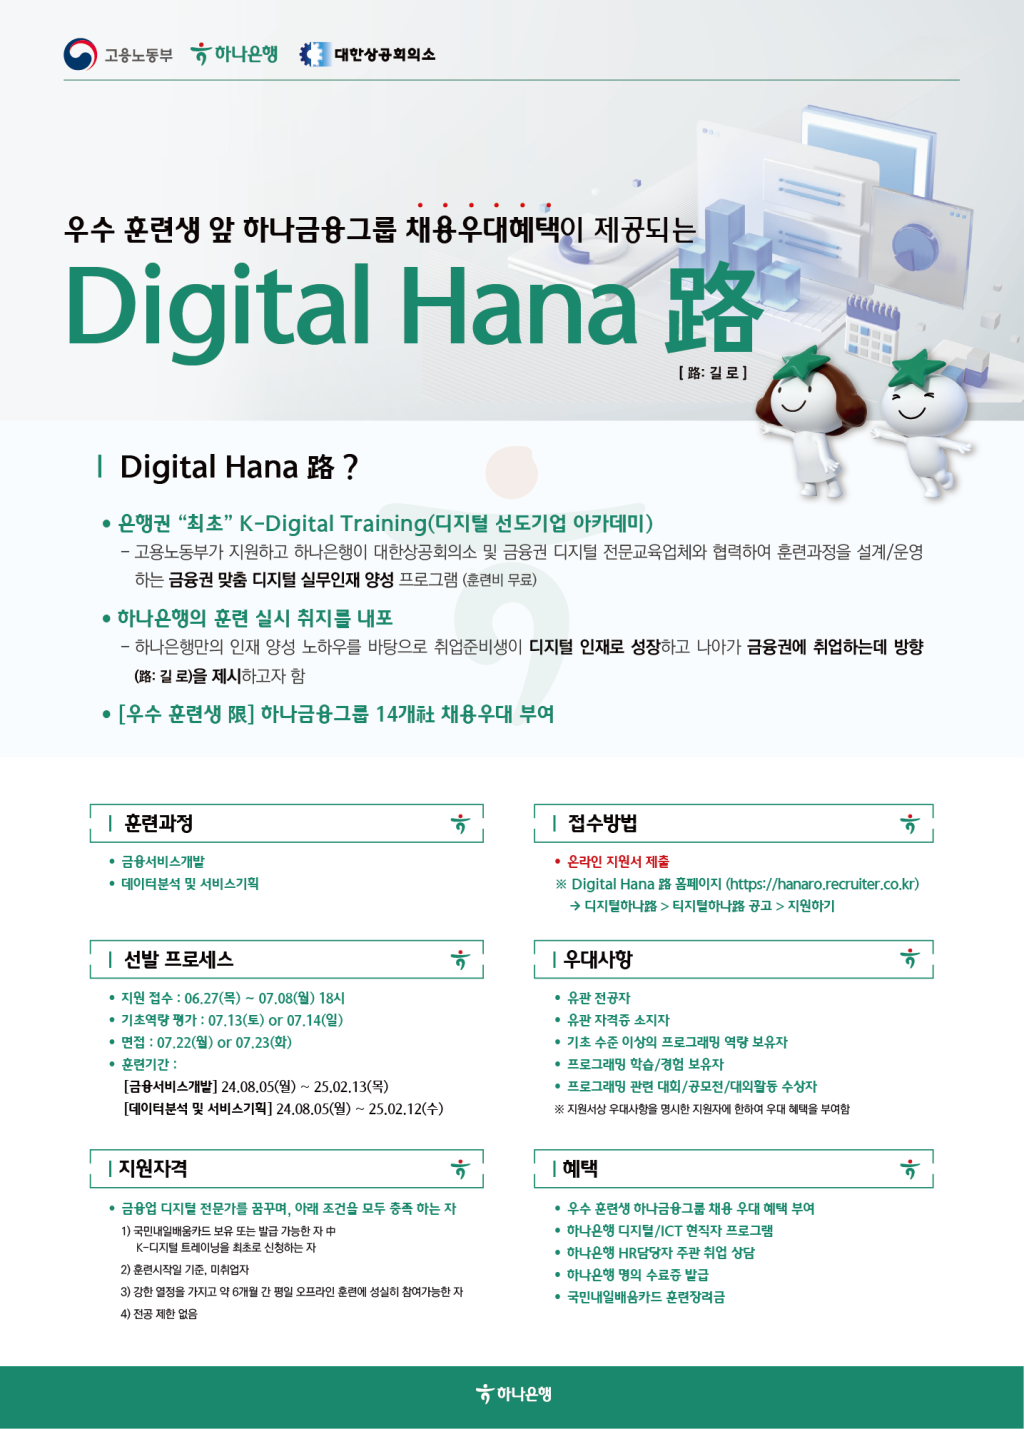 [하나은행] Digital Hana 路 모집